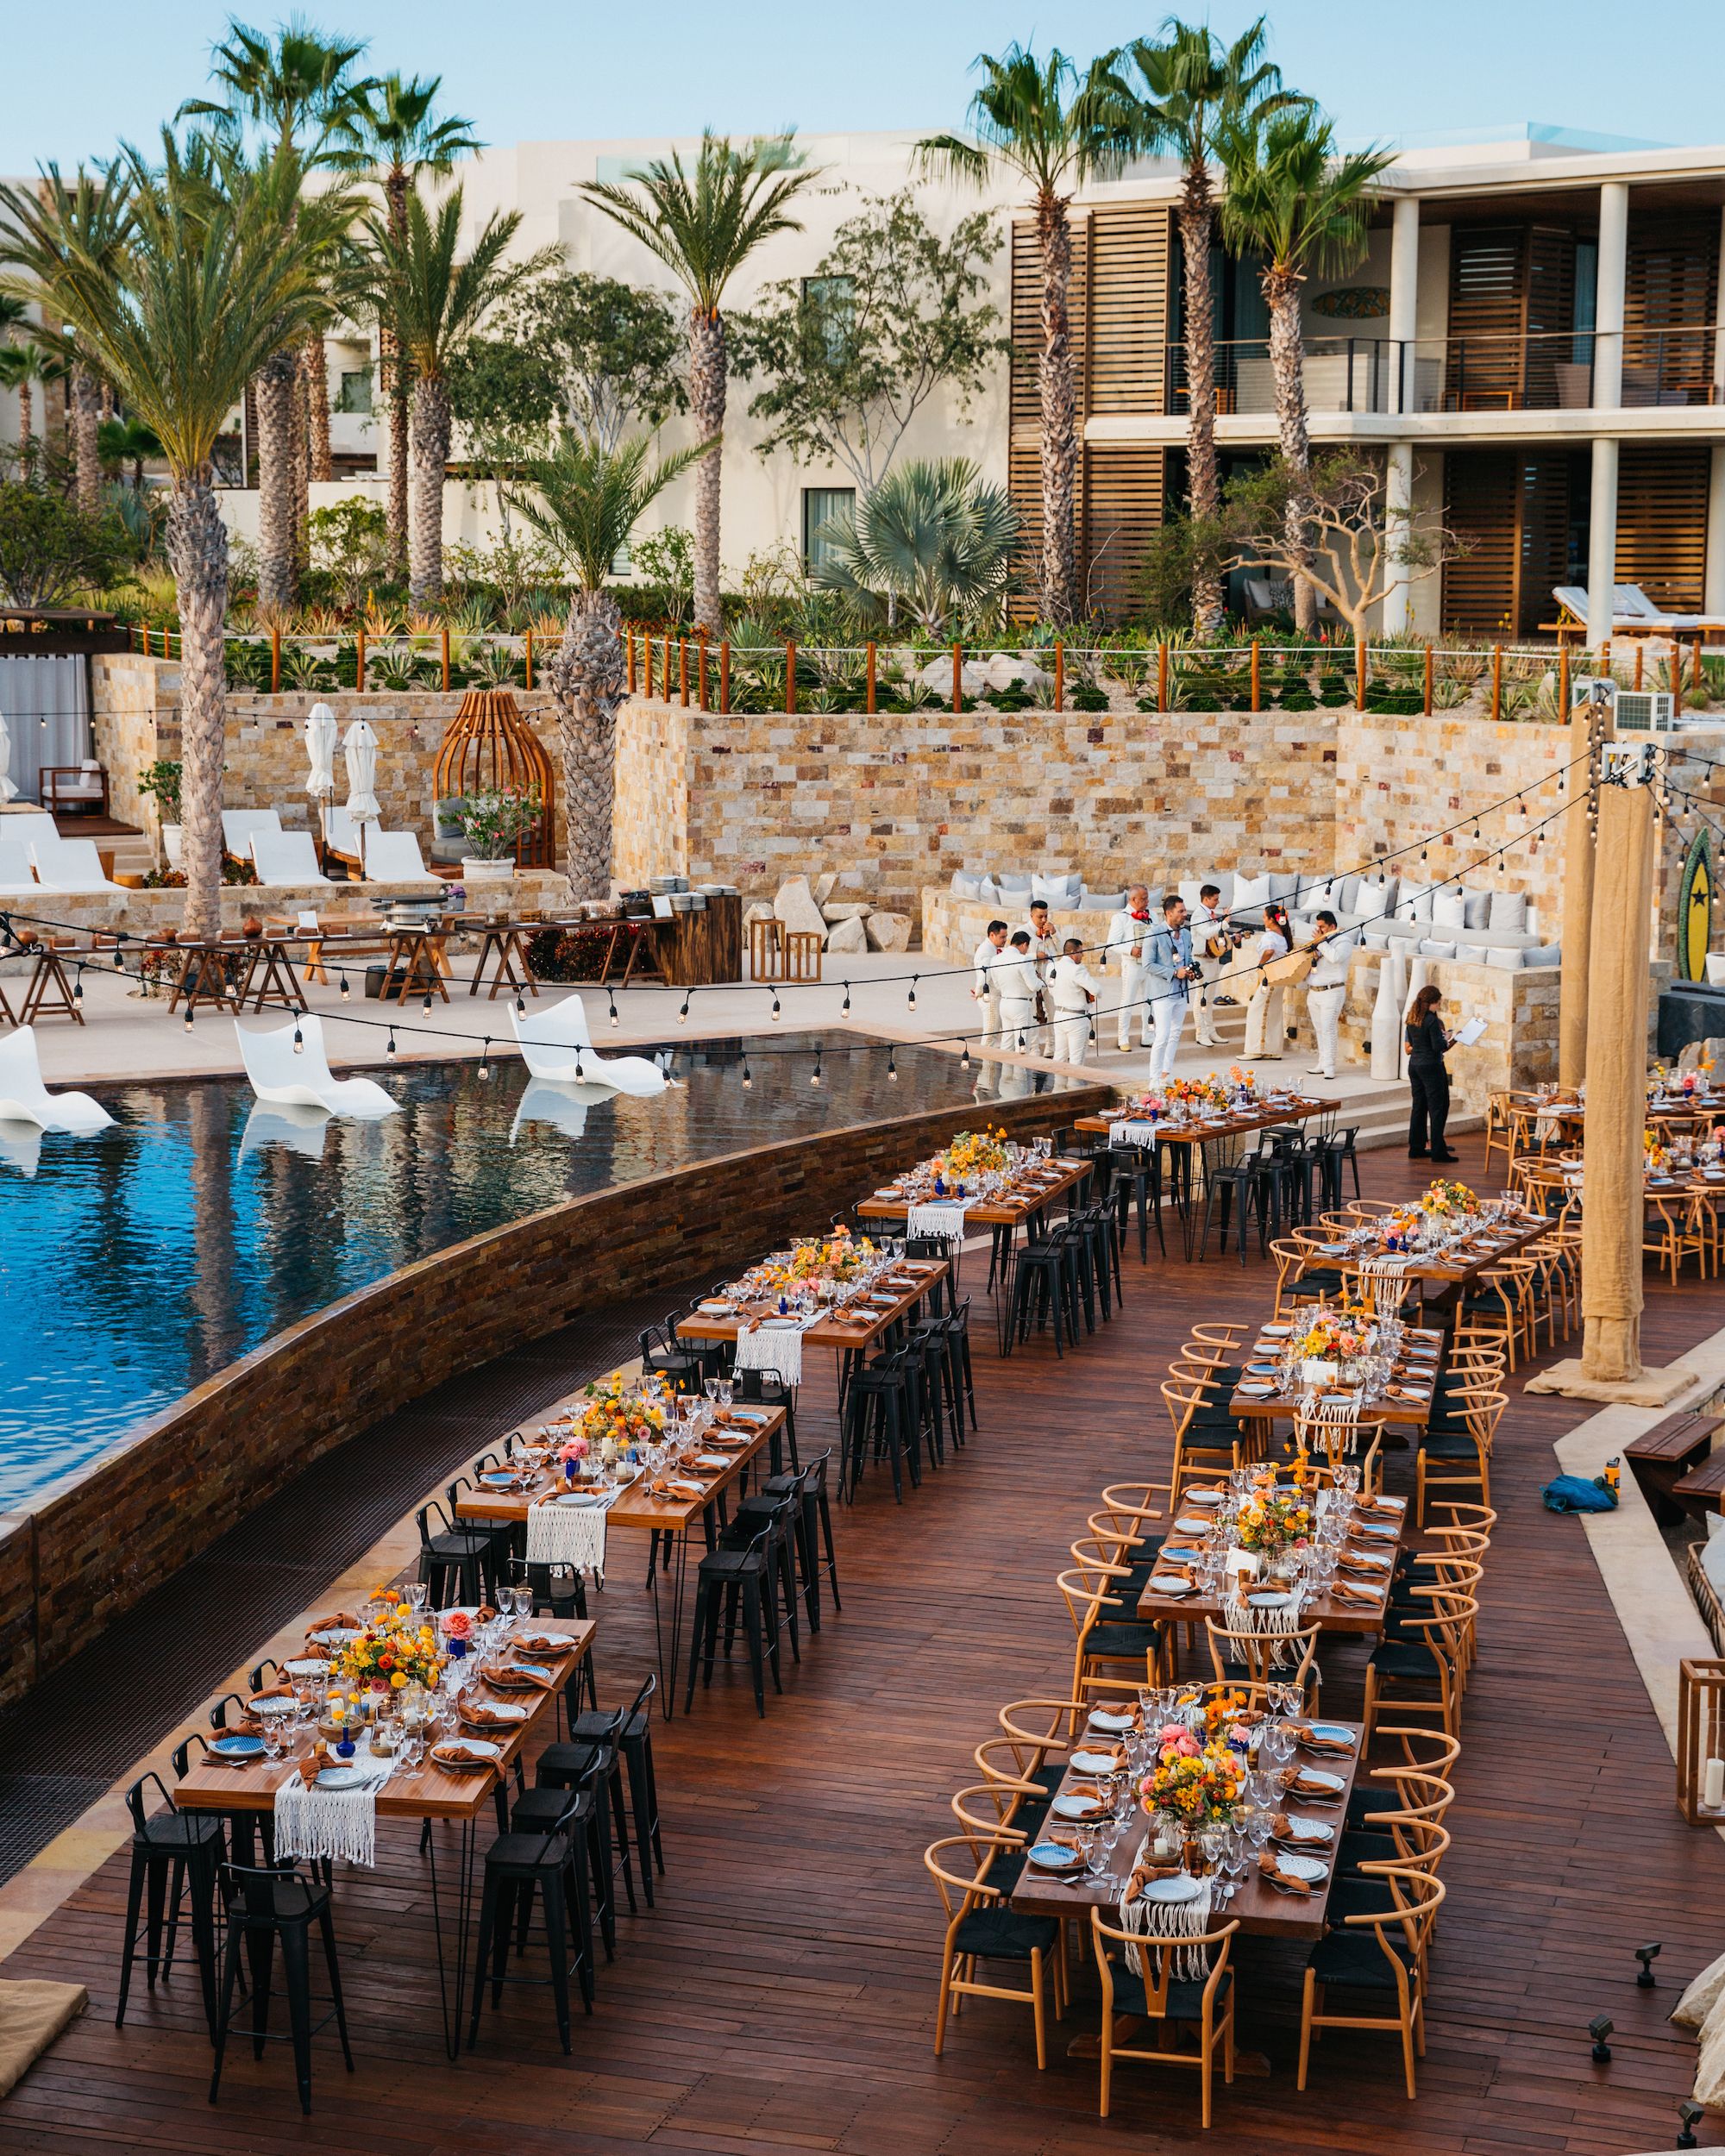 Plan Your Wedding at Chileno Bay Resort in Los Cabos, Mexico